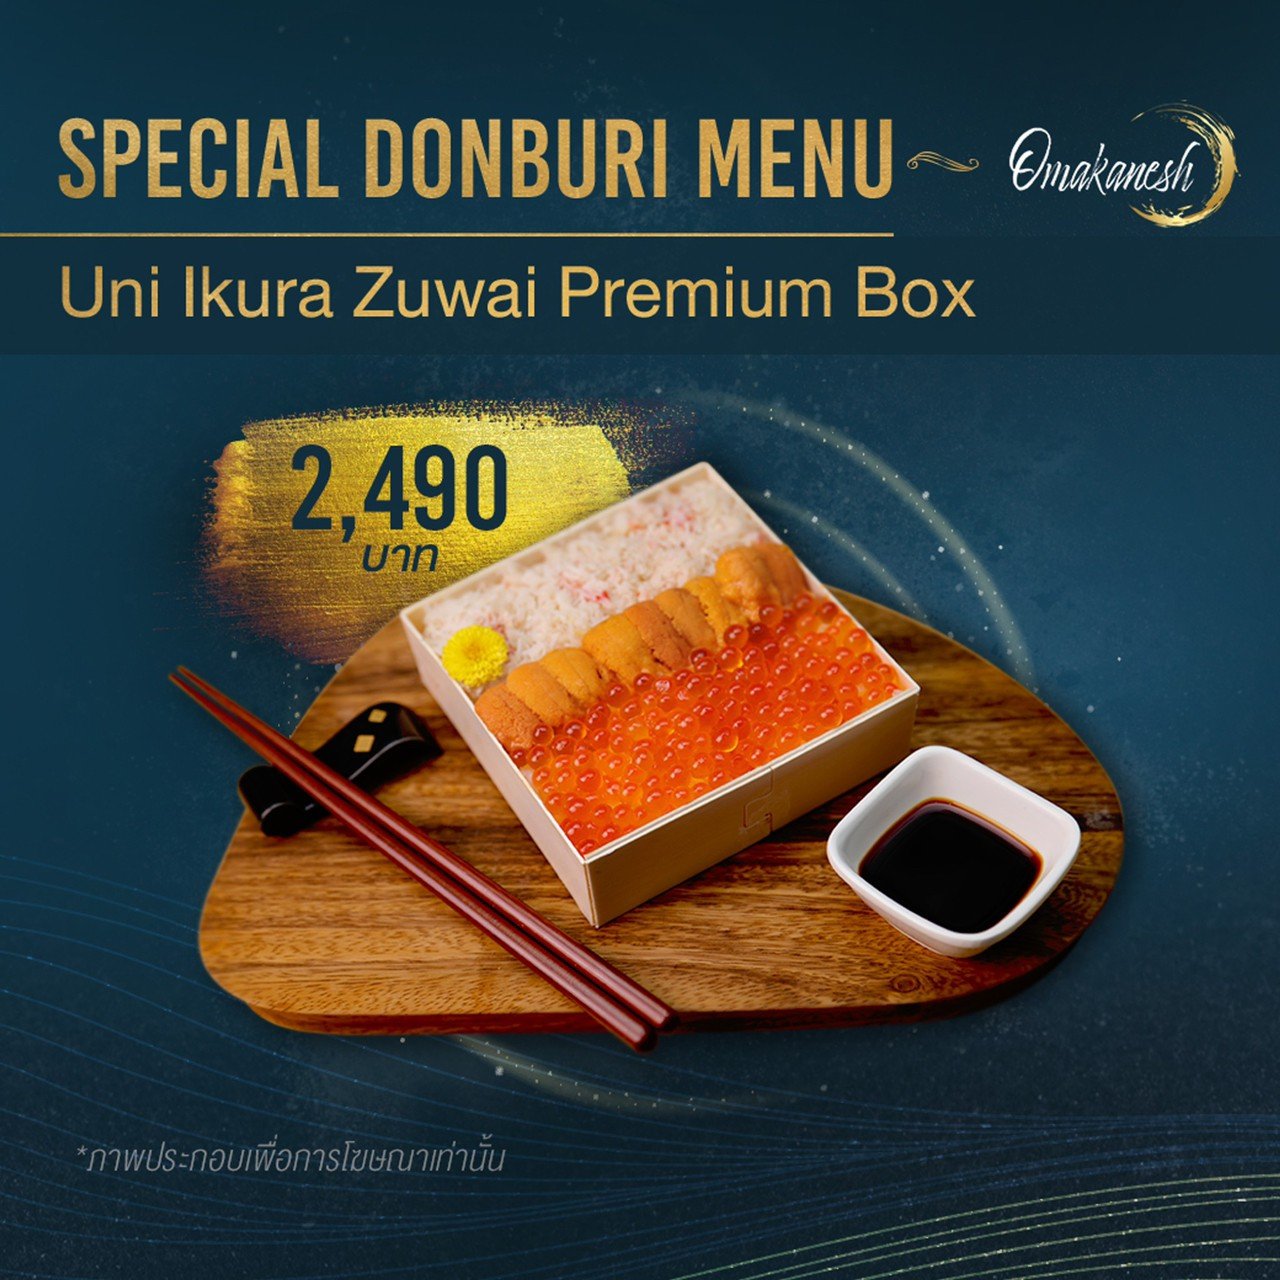 Uni Ikura Zuwai Premium Box